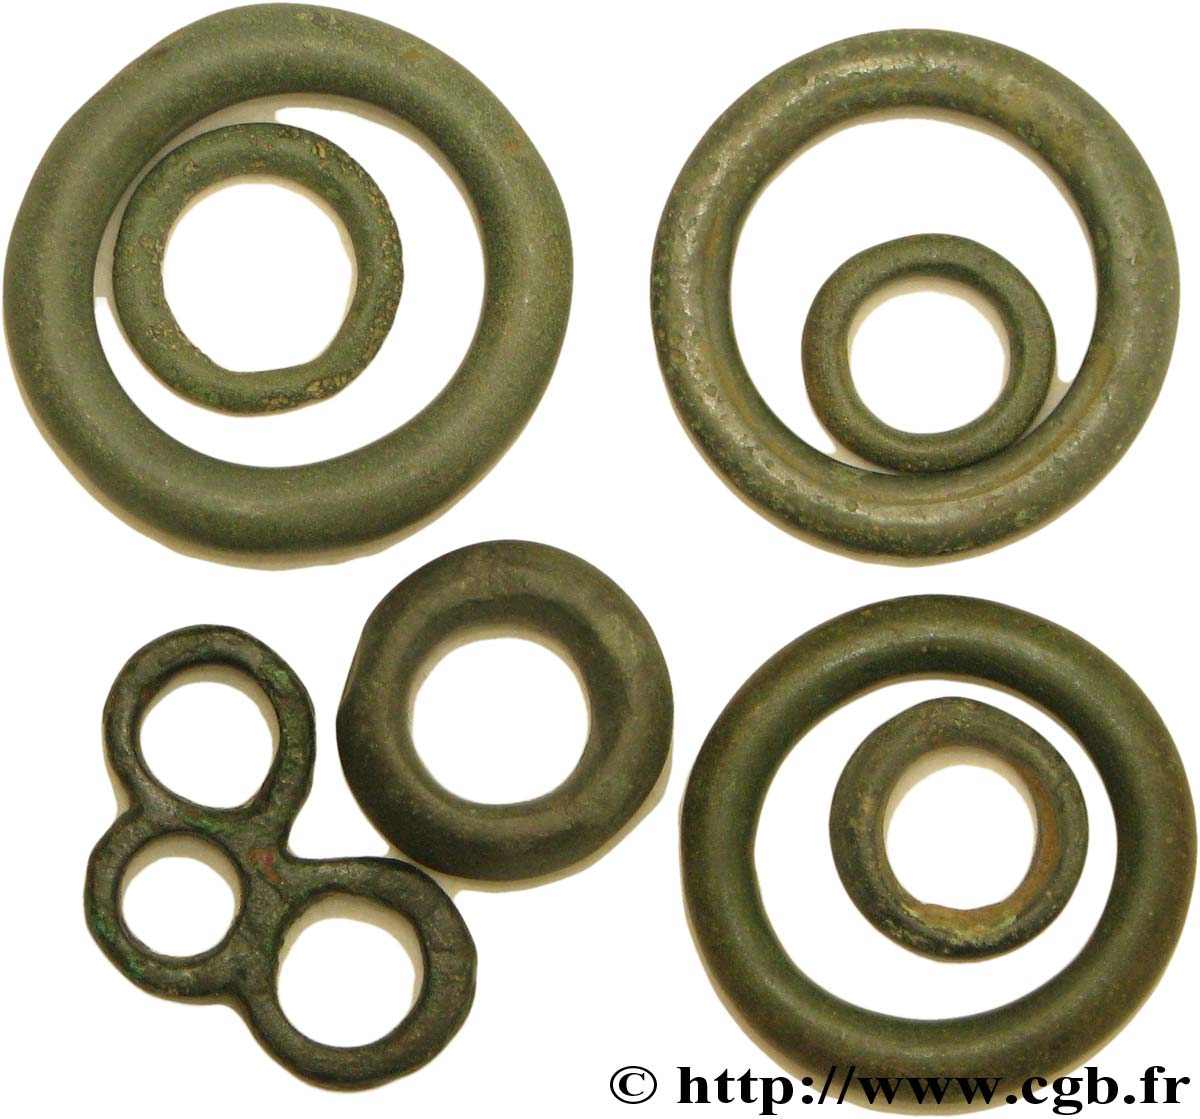  ROUELLE  Lot de 8 rouelles, anneaux ou perles en bronze lote